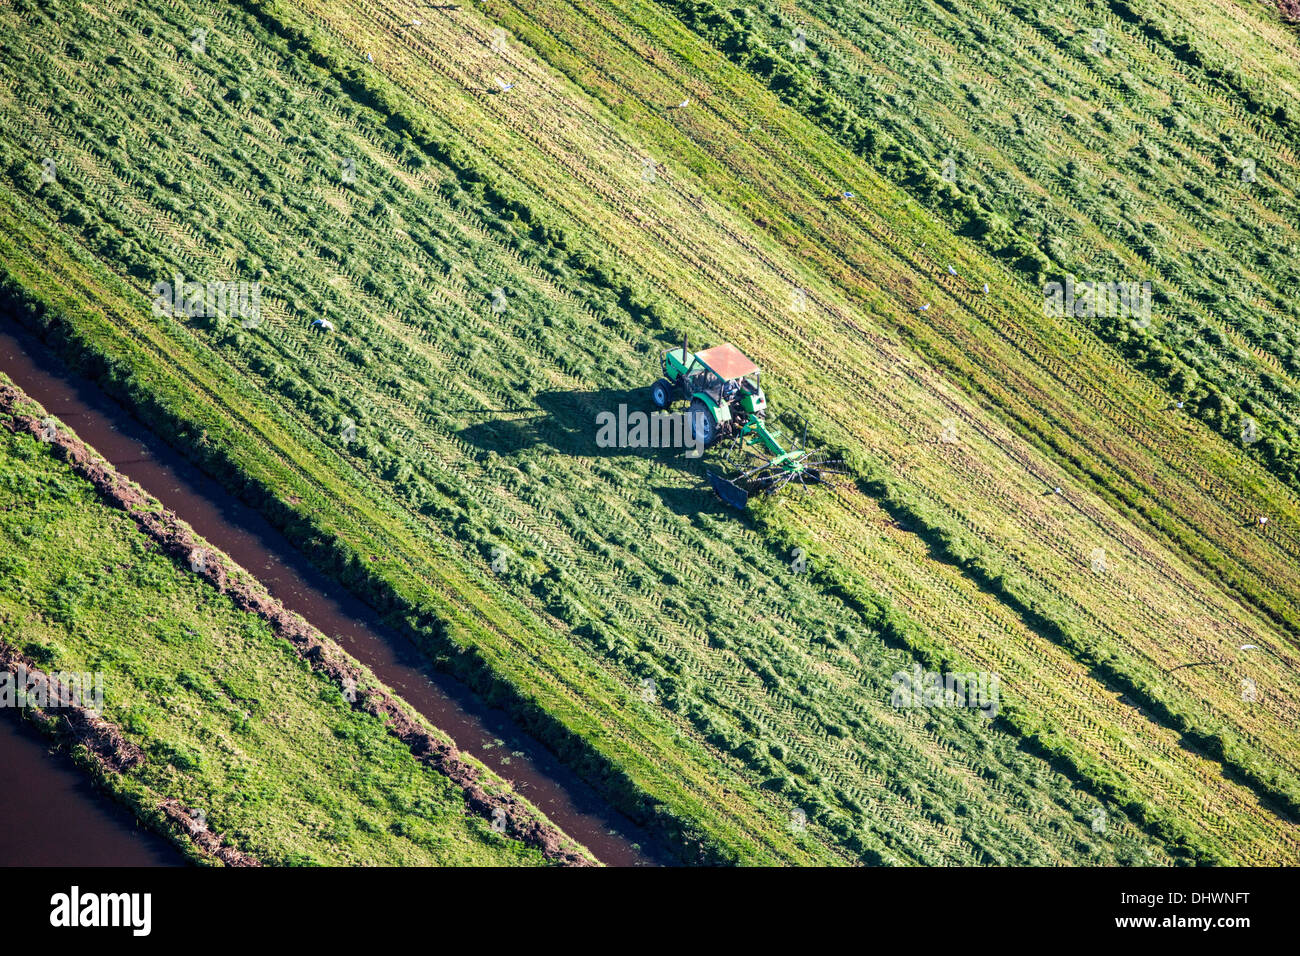 Niederlande, Loenen. Landwirt mit Traktor Rasen zu sammeln. Luftbild Stockfoto